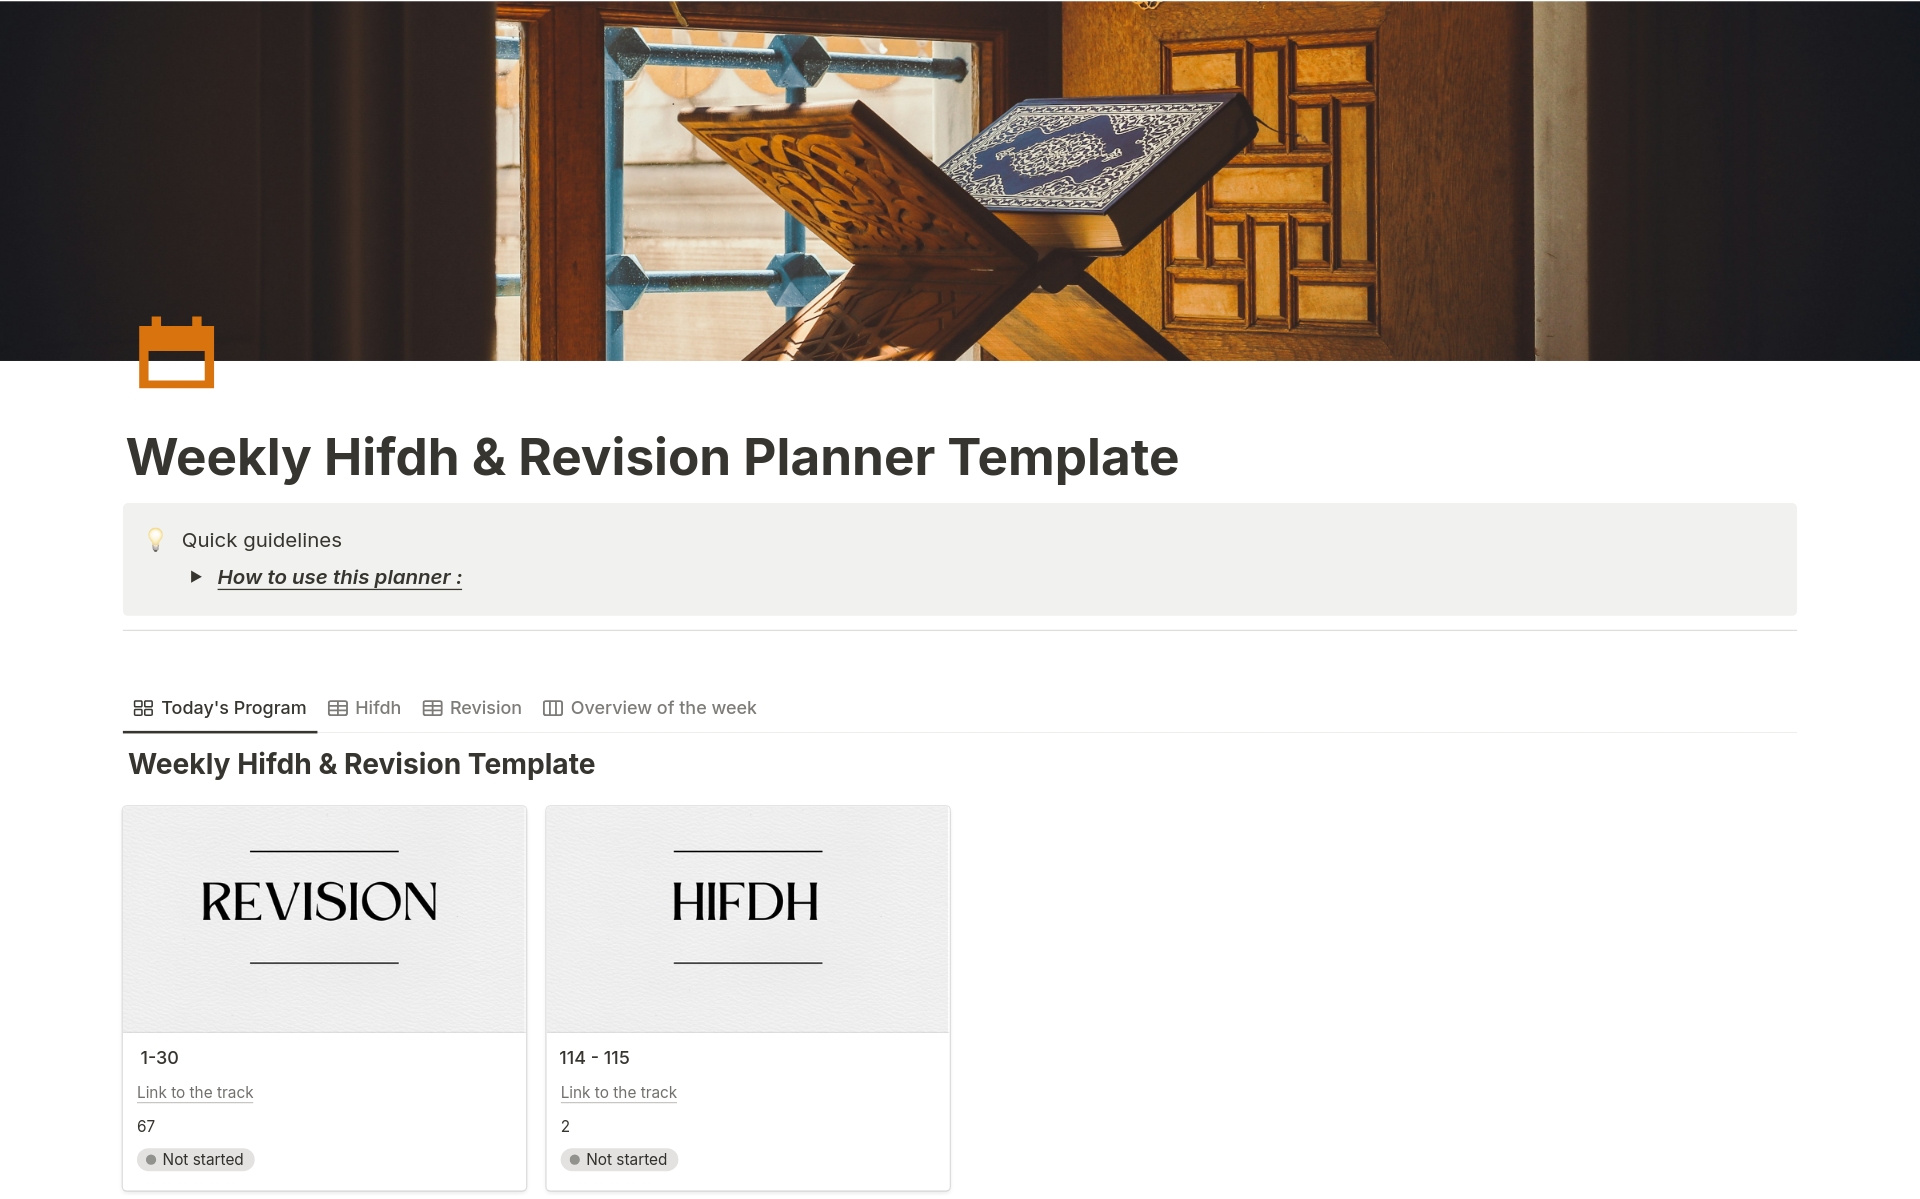 Uma prévia do modelo para Weekly Hifdh & Revision Planner